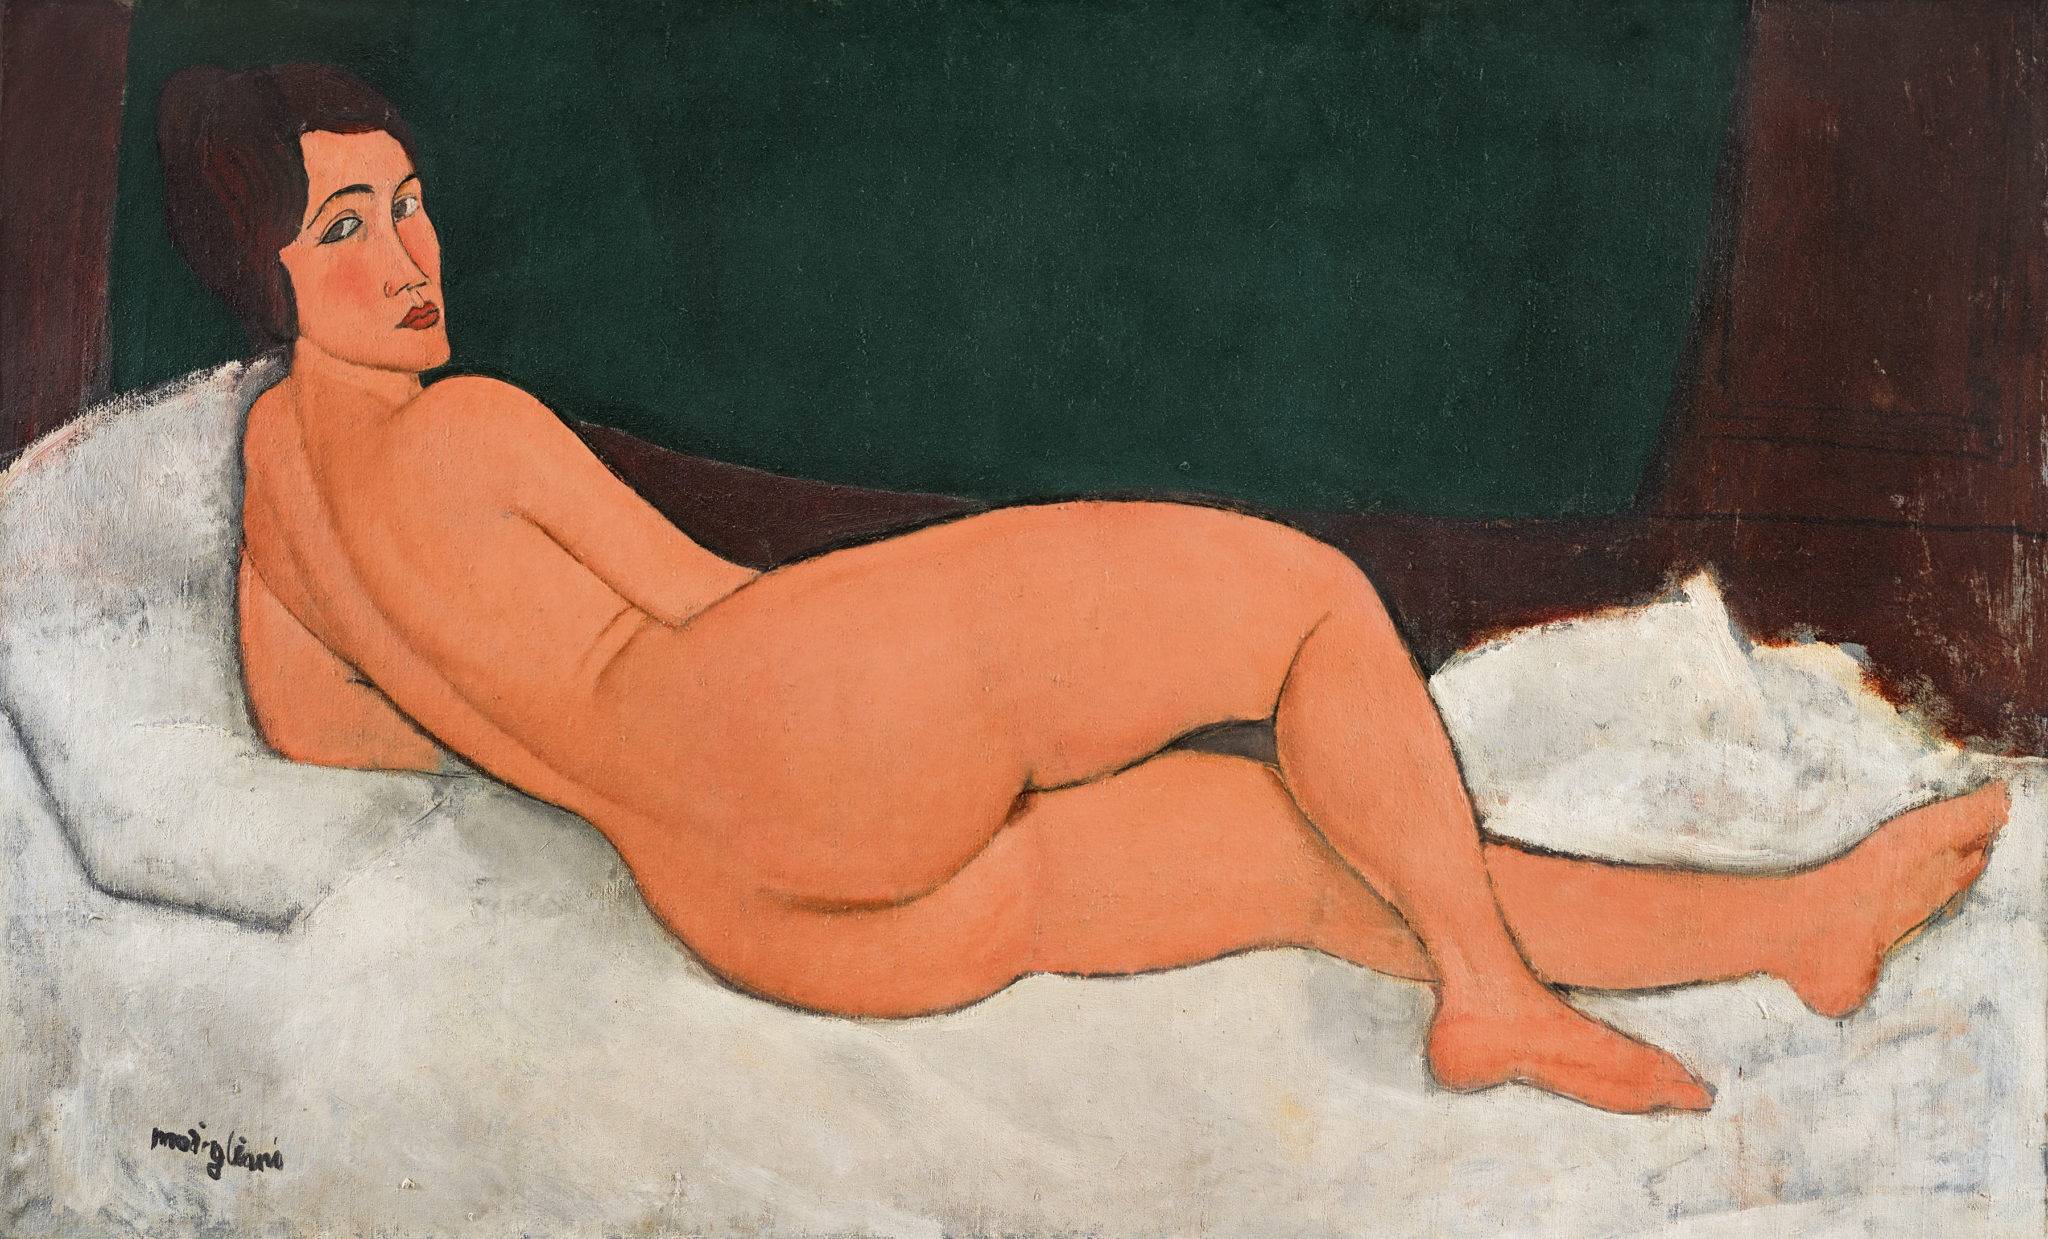 Un Picasso entre dans le top 10 des œuvres les plus chères au monde